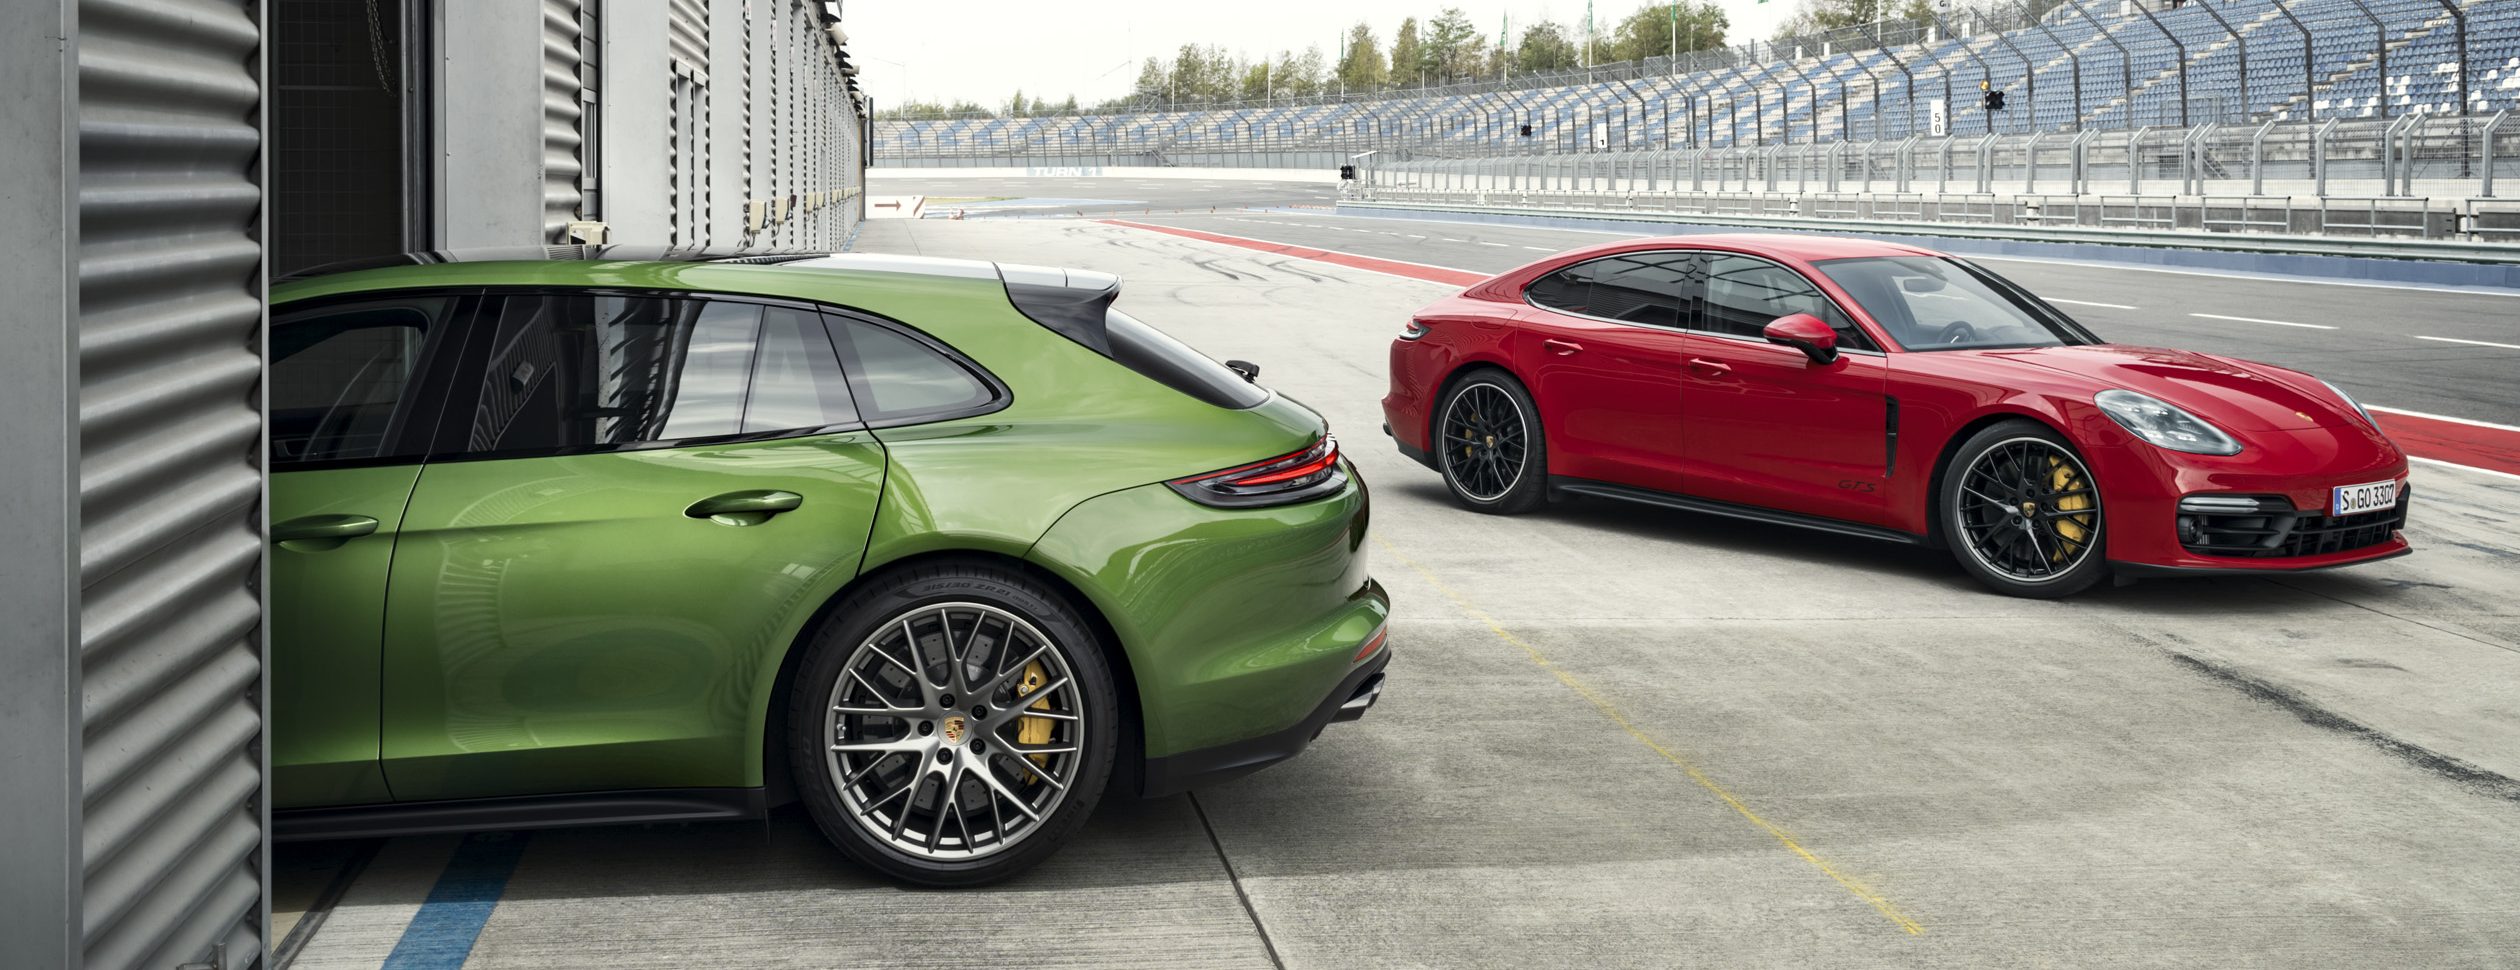 Điểm khác biệt giữa GTS và các dòng xe Porsche khác là gì?
